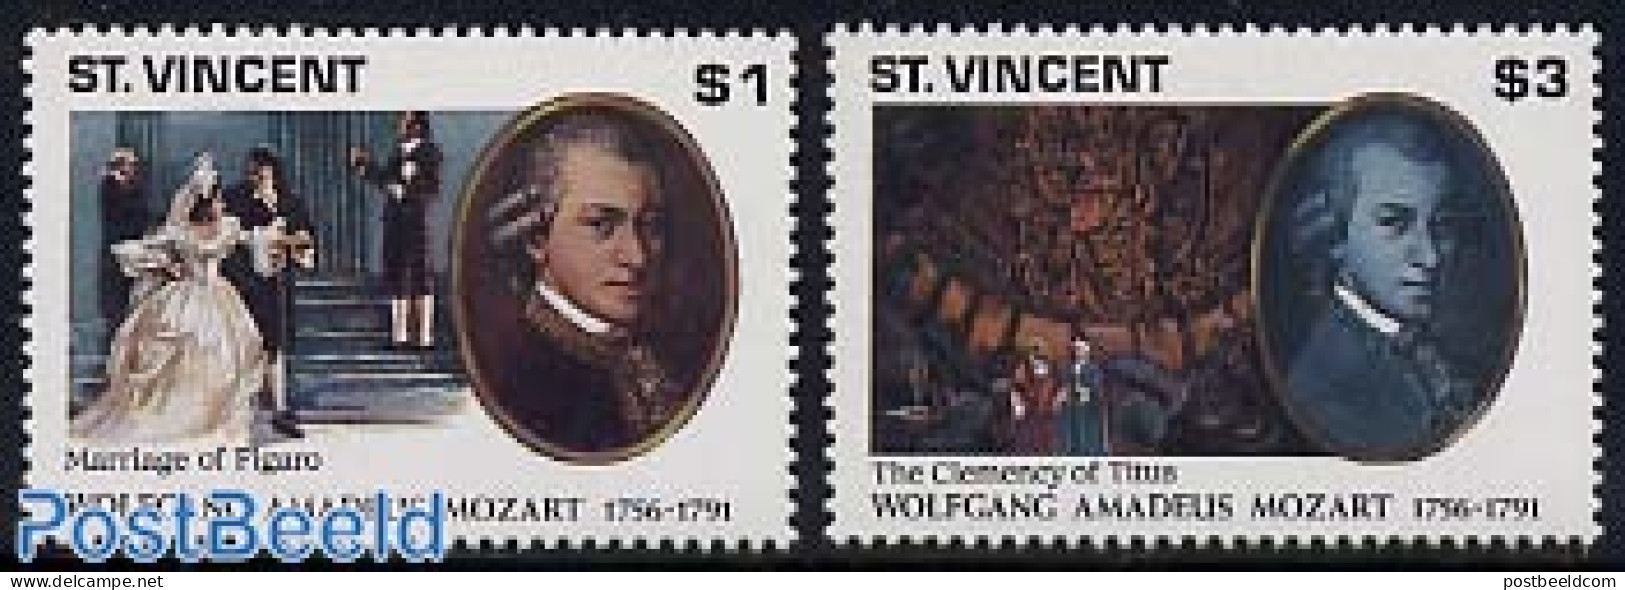 Saint Vincent 1991 Mozart 2v, Mint NH, Performance Art - Amadeus Mozart - Music - Musique